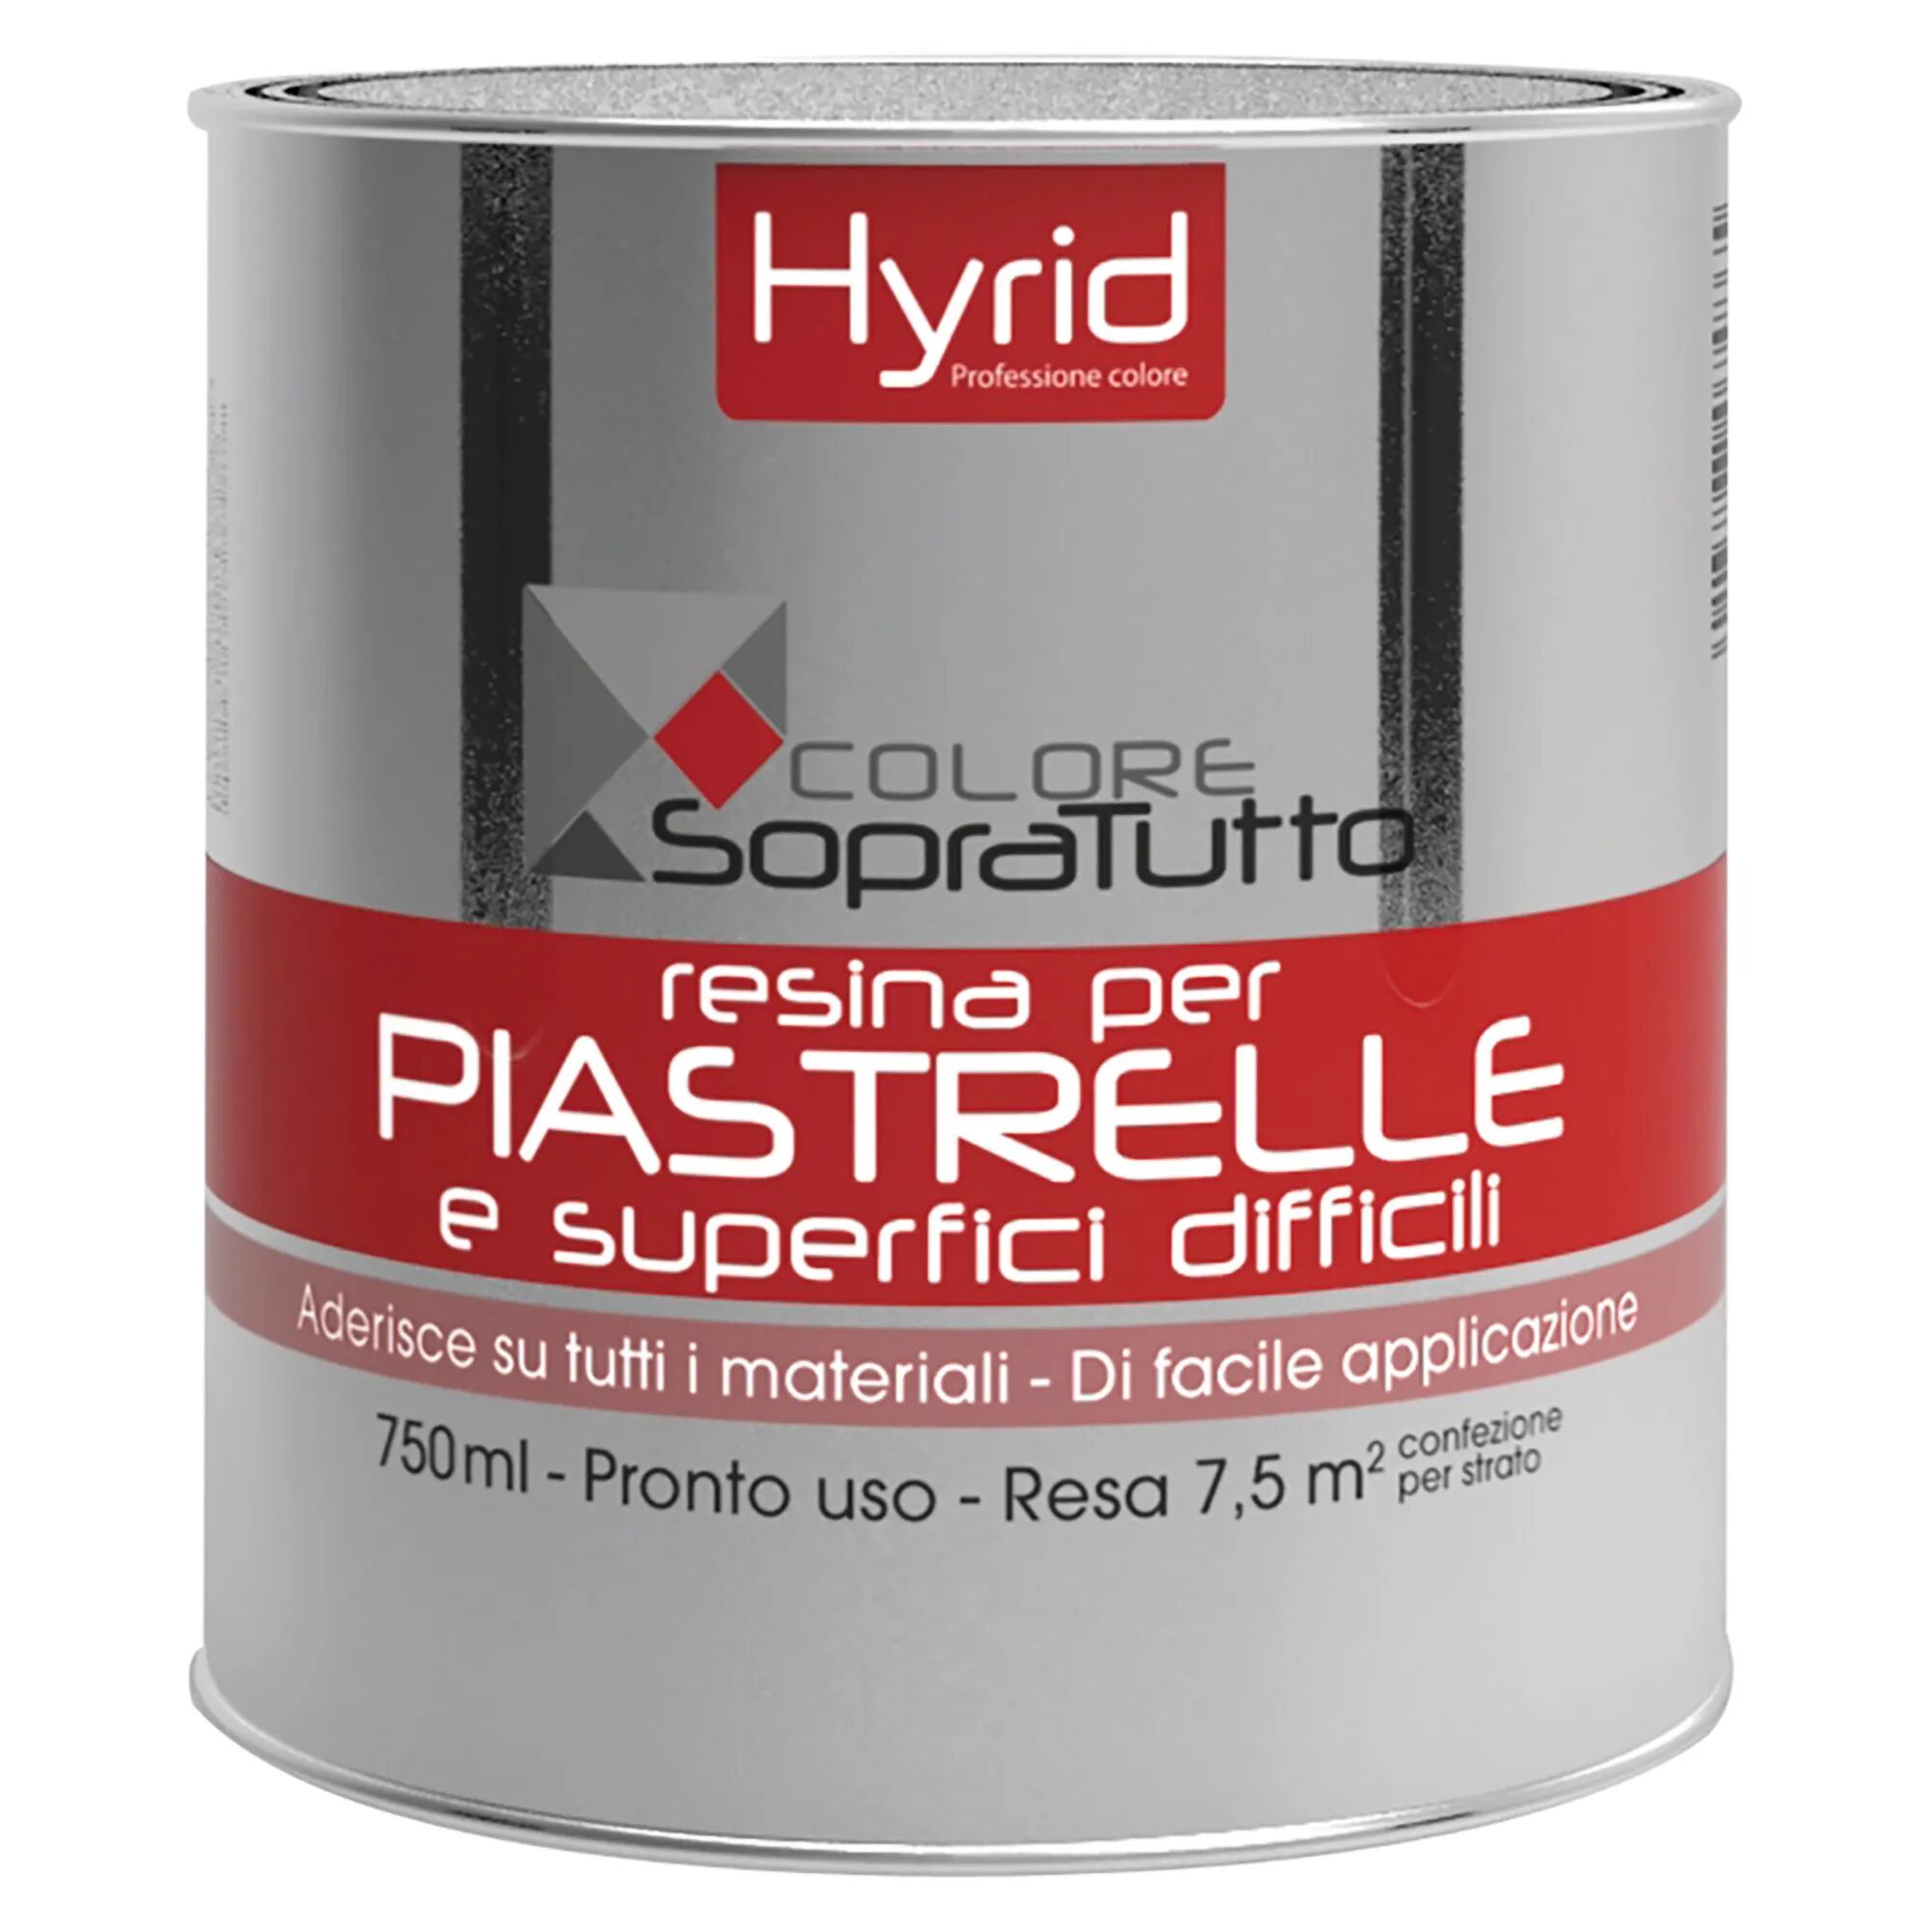 Hyrid By Covema RESINA PIASTRELLE HYRID LAGUNA 750 ml PER SUPERFICI DIFFICILI 10 m²  CON 1 l PRONTO USO